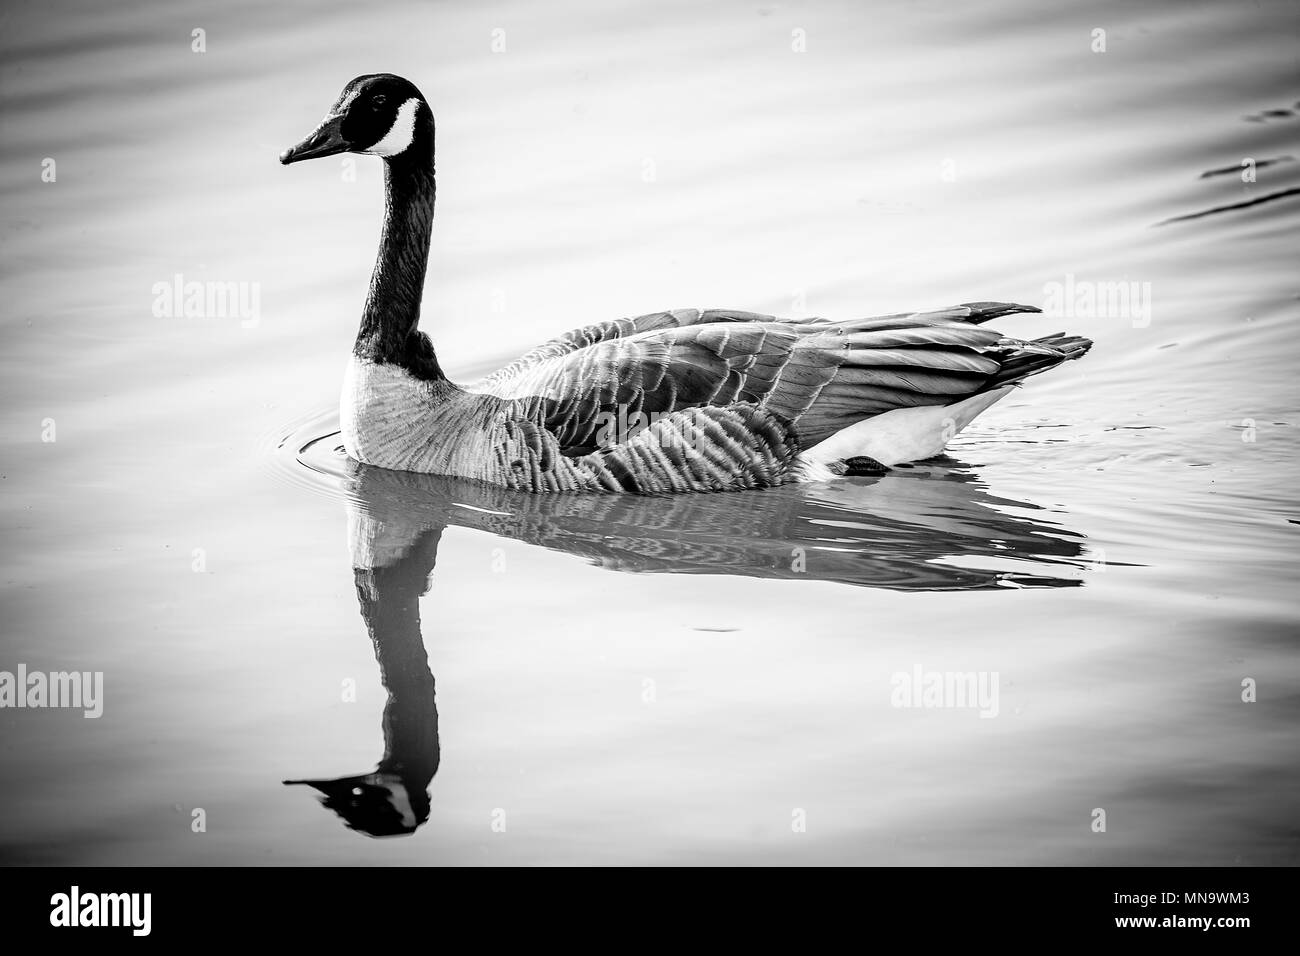 Un graylag goose (Anser anser) nuotare in un lago con riflessioni. Bodenham laghi, Herefordshire. Foto Stock